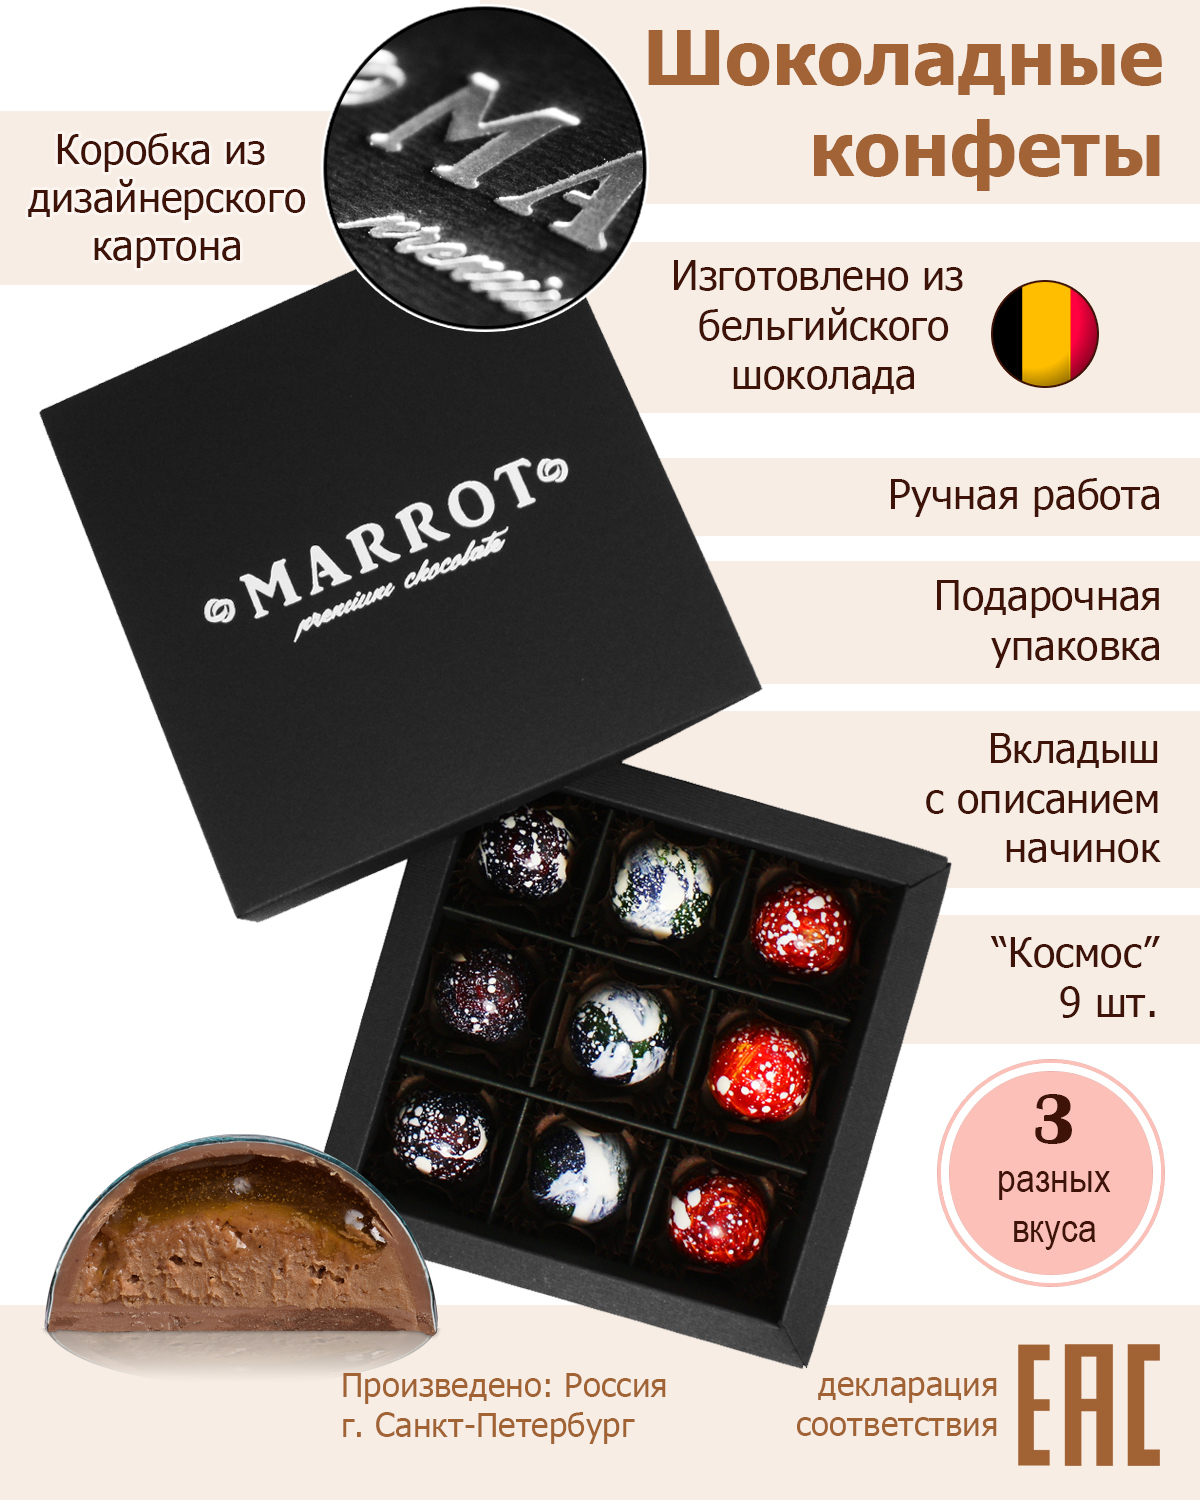 Шоколадные конфеты: как выбрать и где купить — Пресс-релизы — Канонер